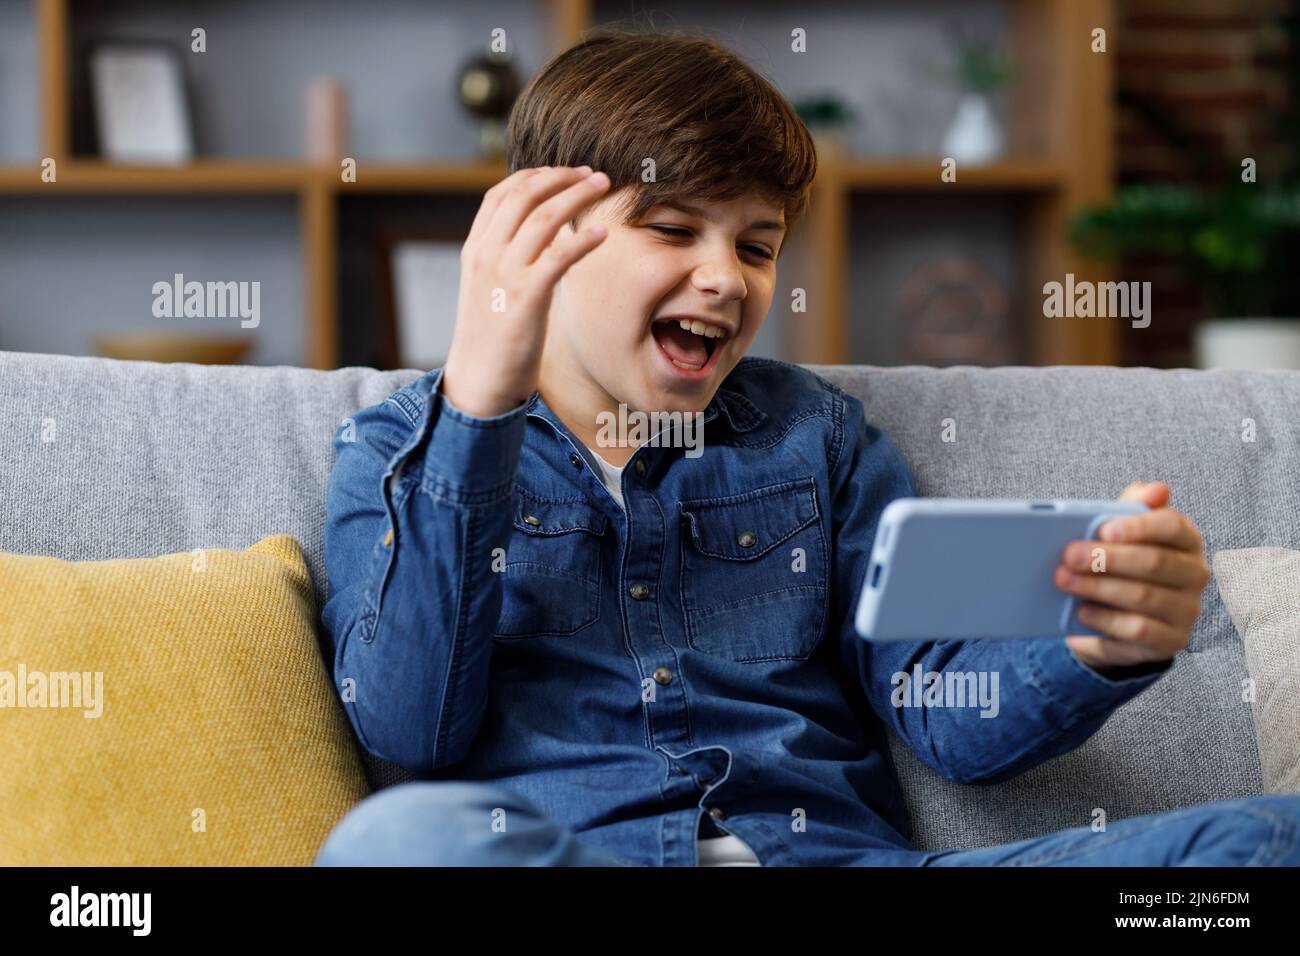 El niño reacciona emocionalmente a lo que está sucediendo en la pantalla del smartphone. Un adolescente pasa tiempo en casa con un aparato digital. Adolescencia y. Foto de stock